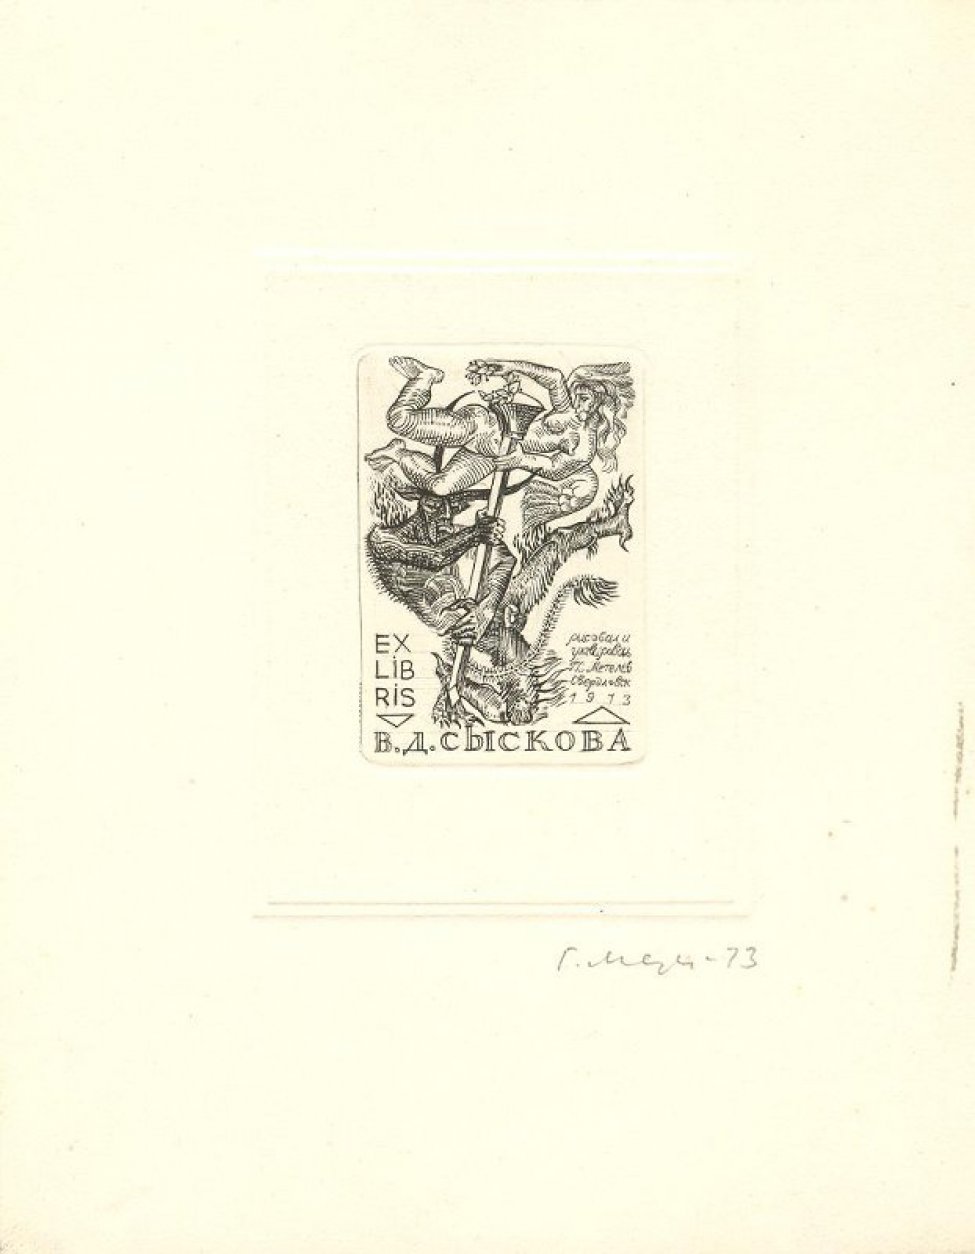 Изображен дьявол с граверным резцом. Над его головой - летящая обнаженная женская фигура с лавровым венком в руке.